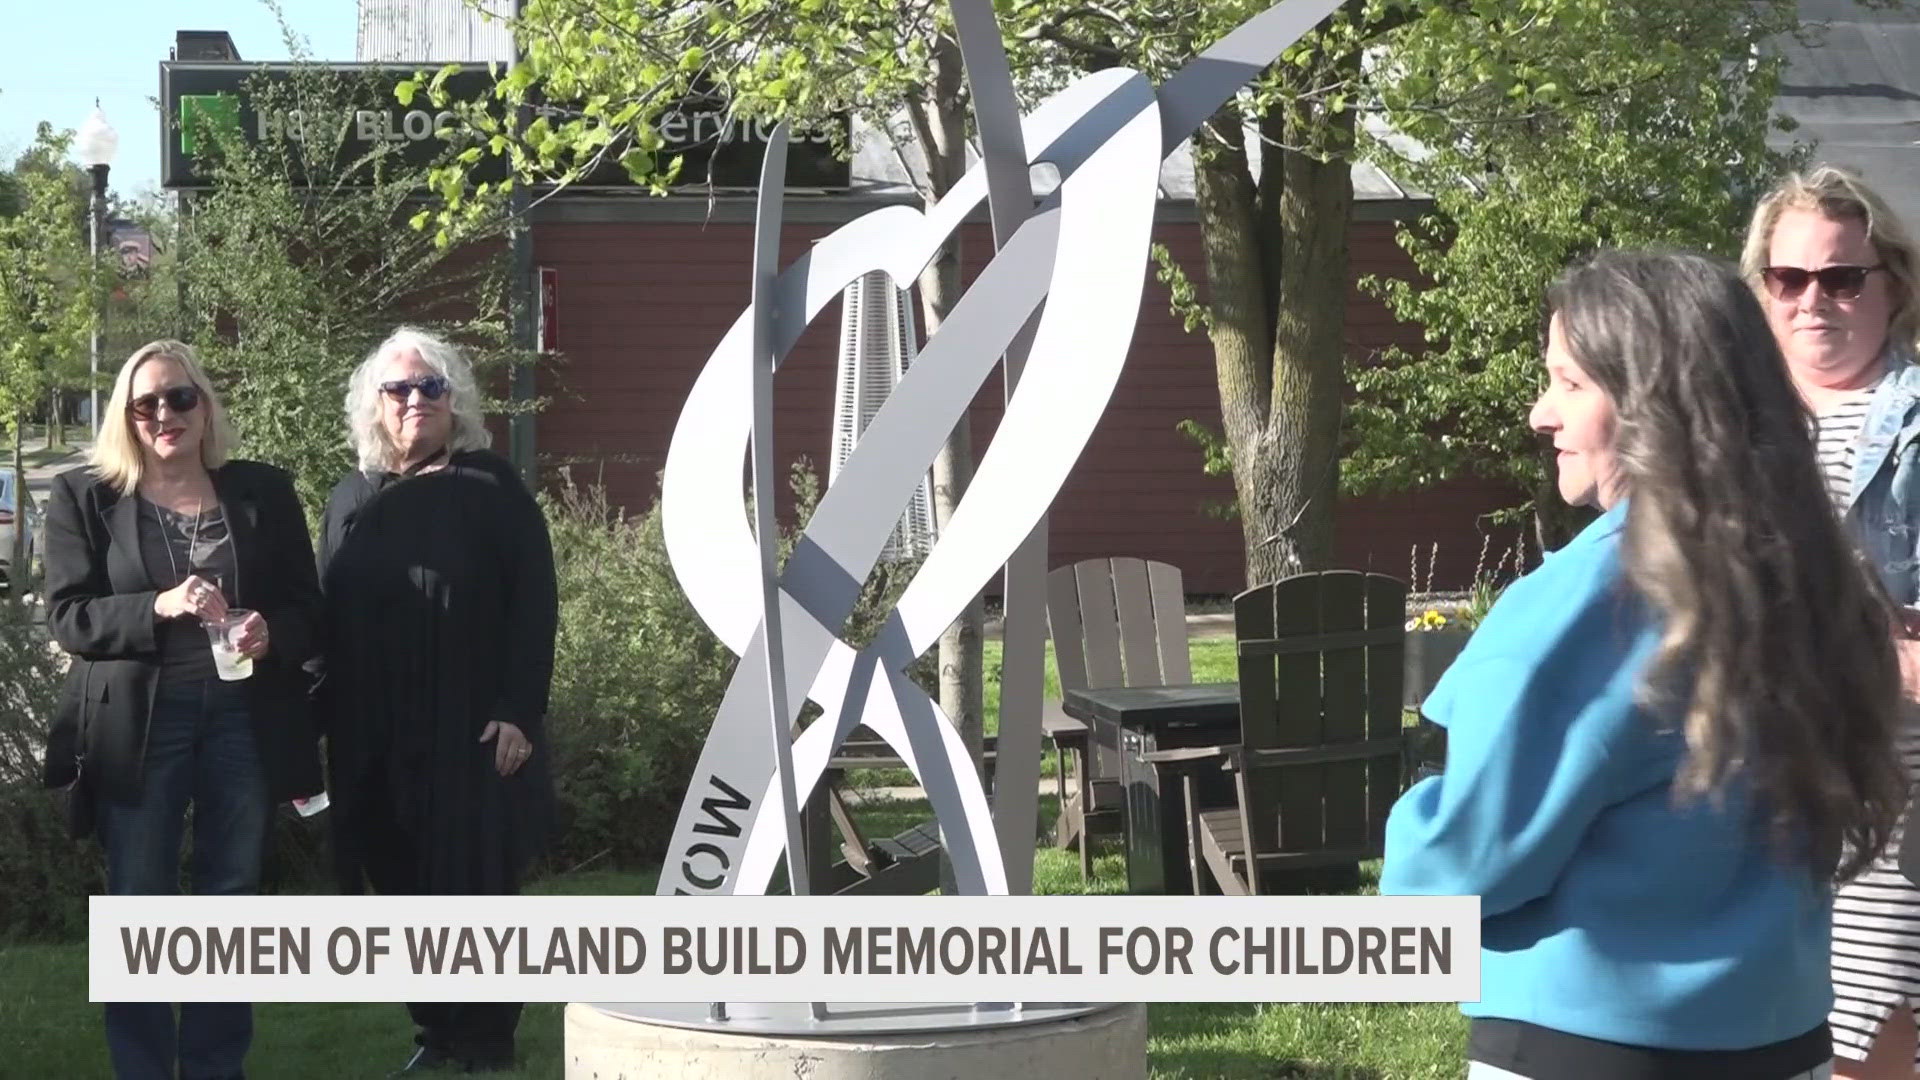 Women of Wayland dedicate memorial sculpture for deceased children.